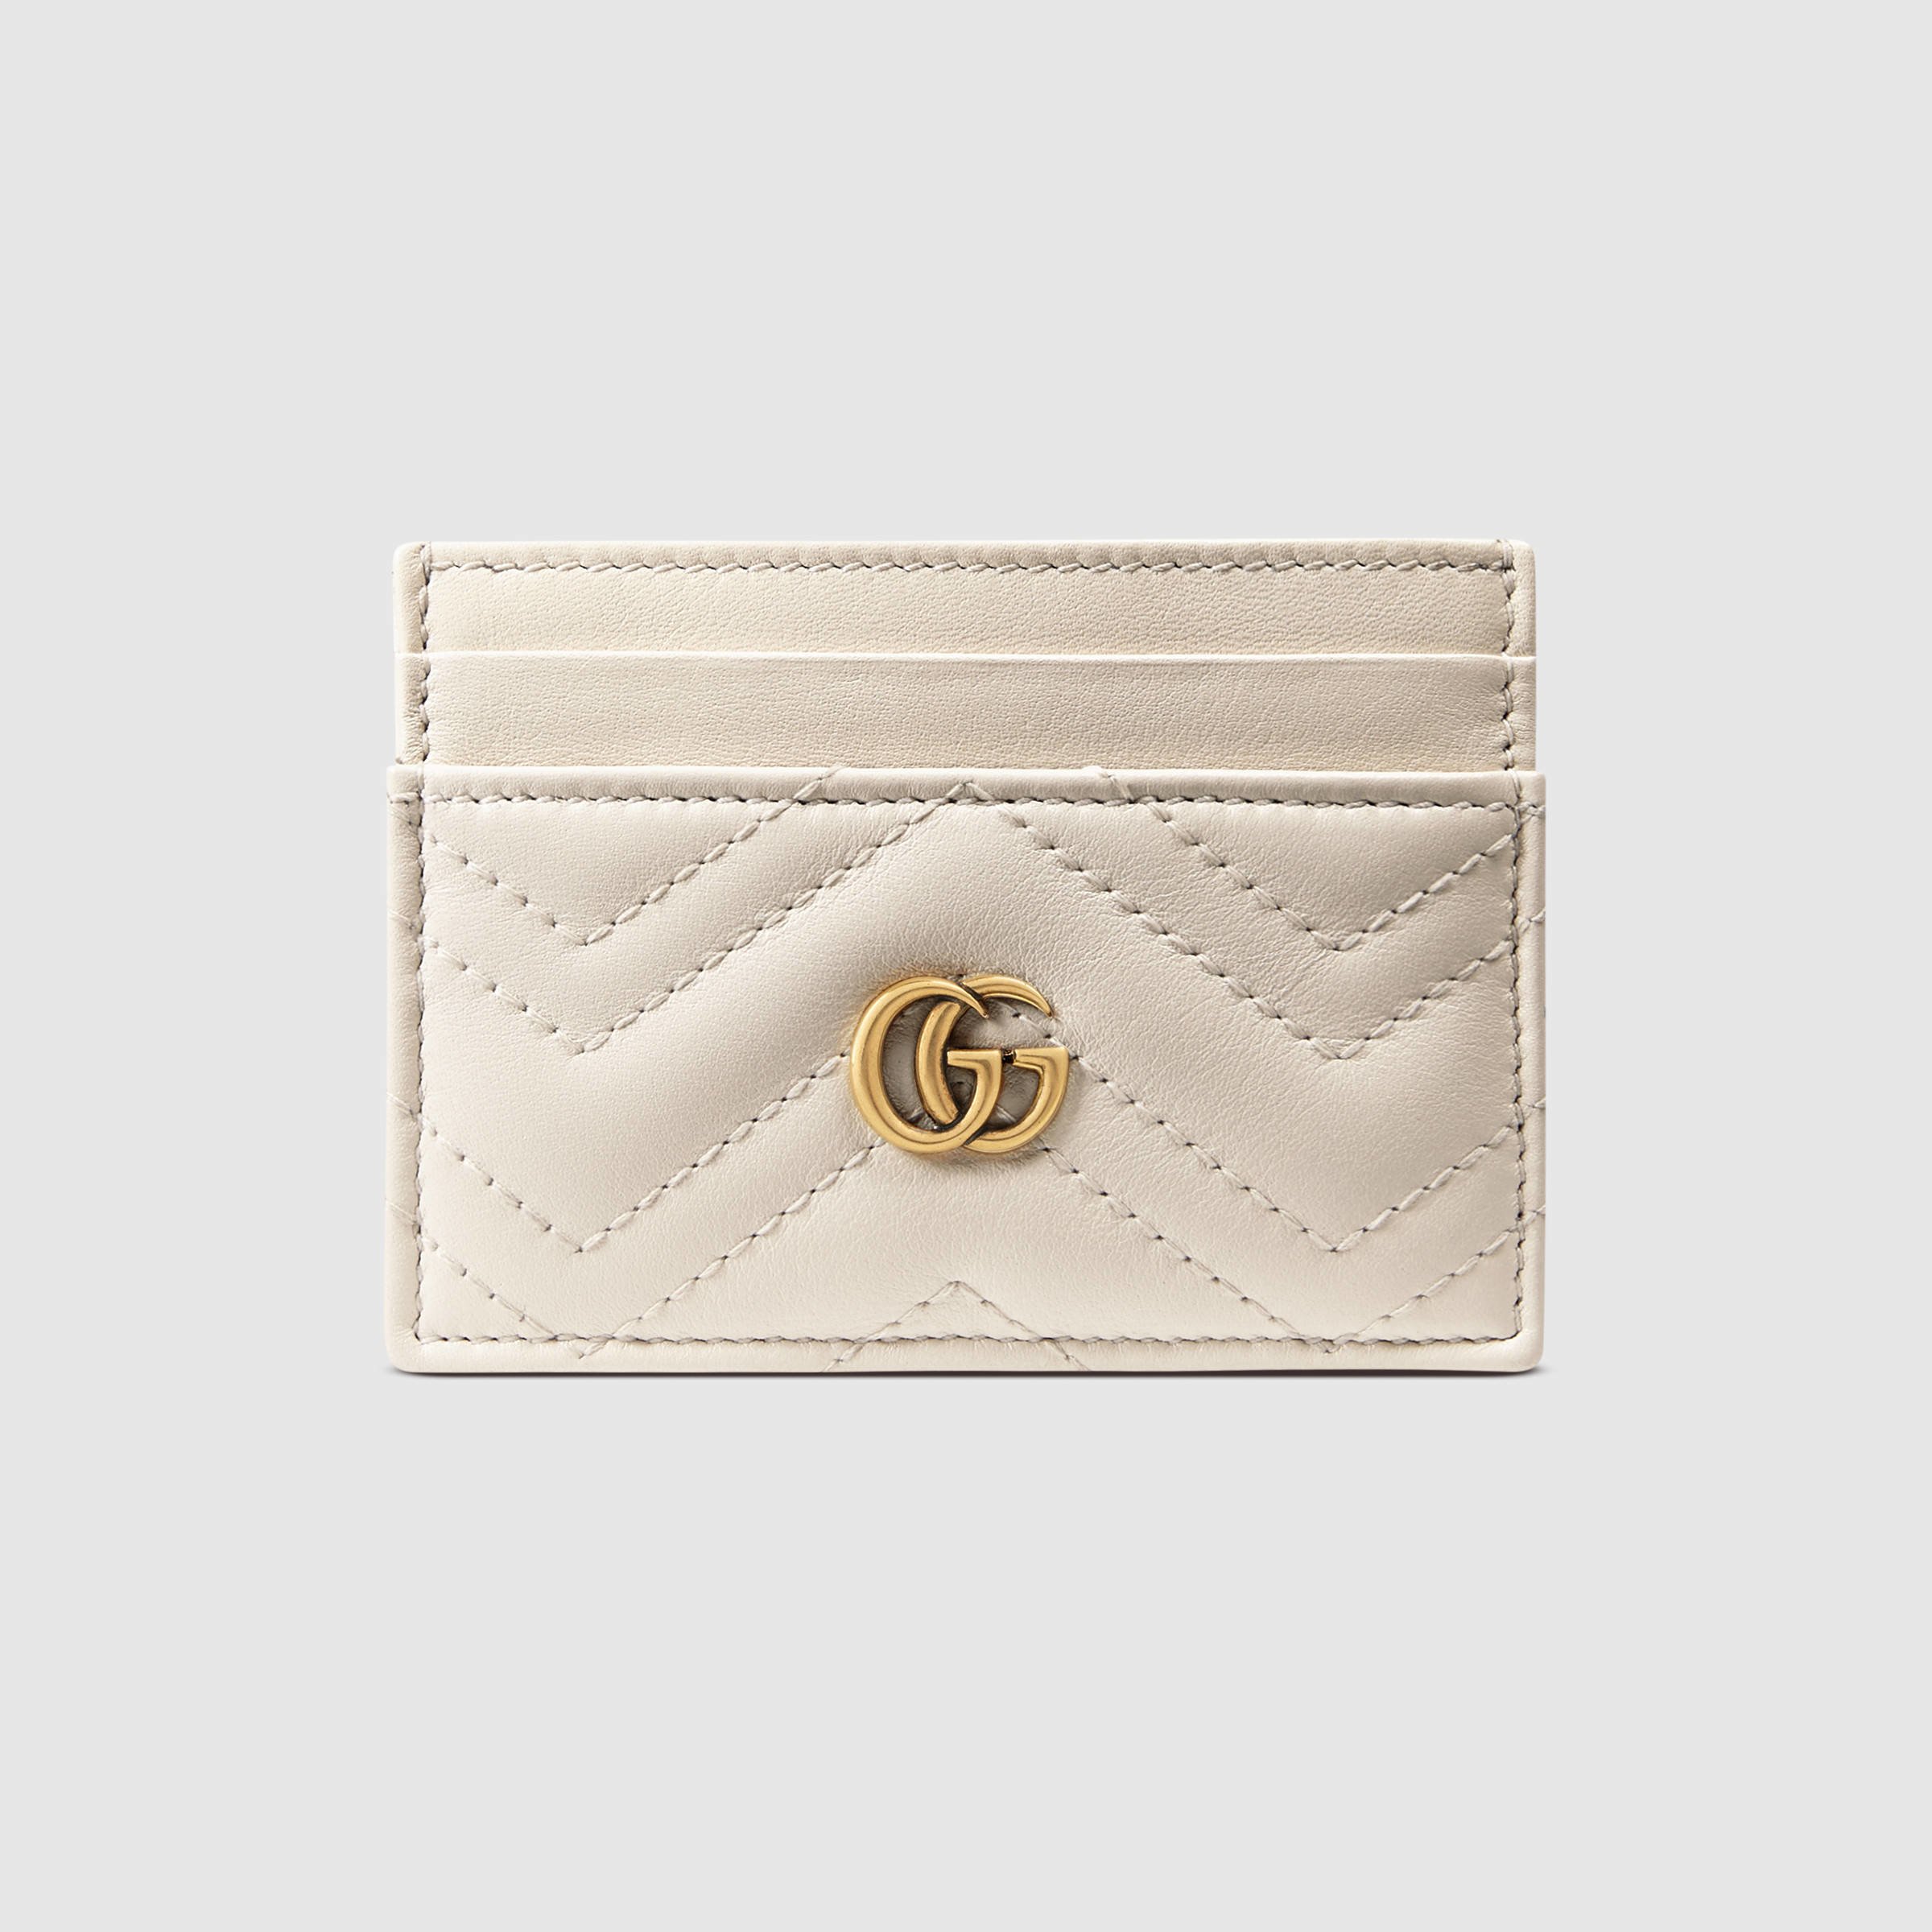 Gucci Card Case in White